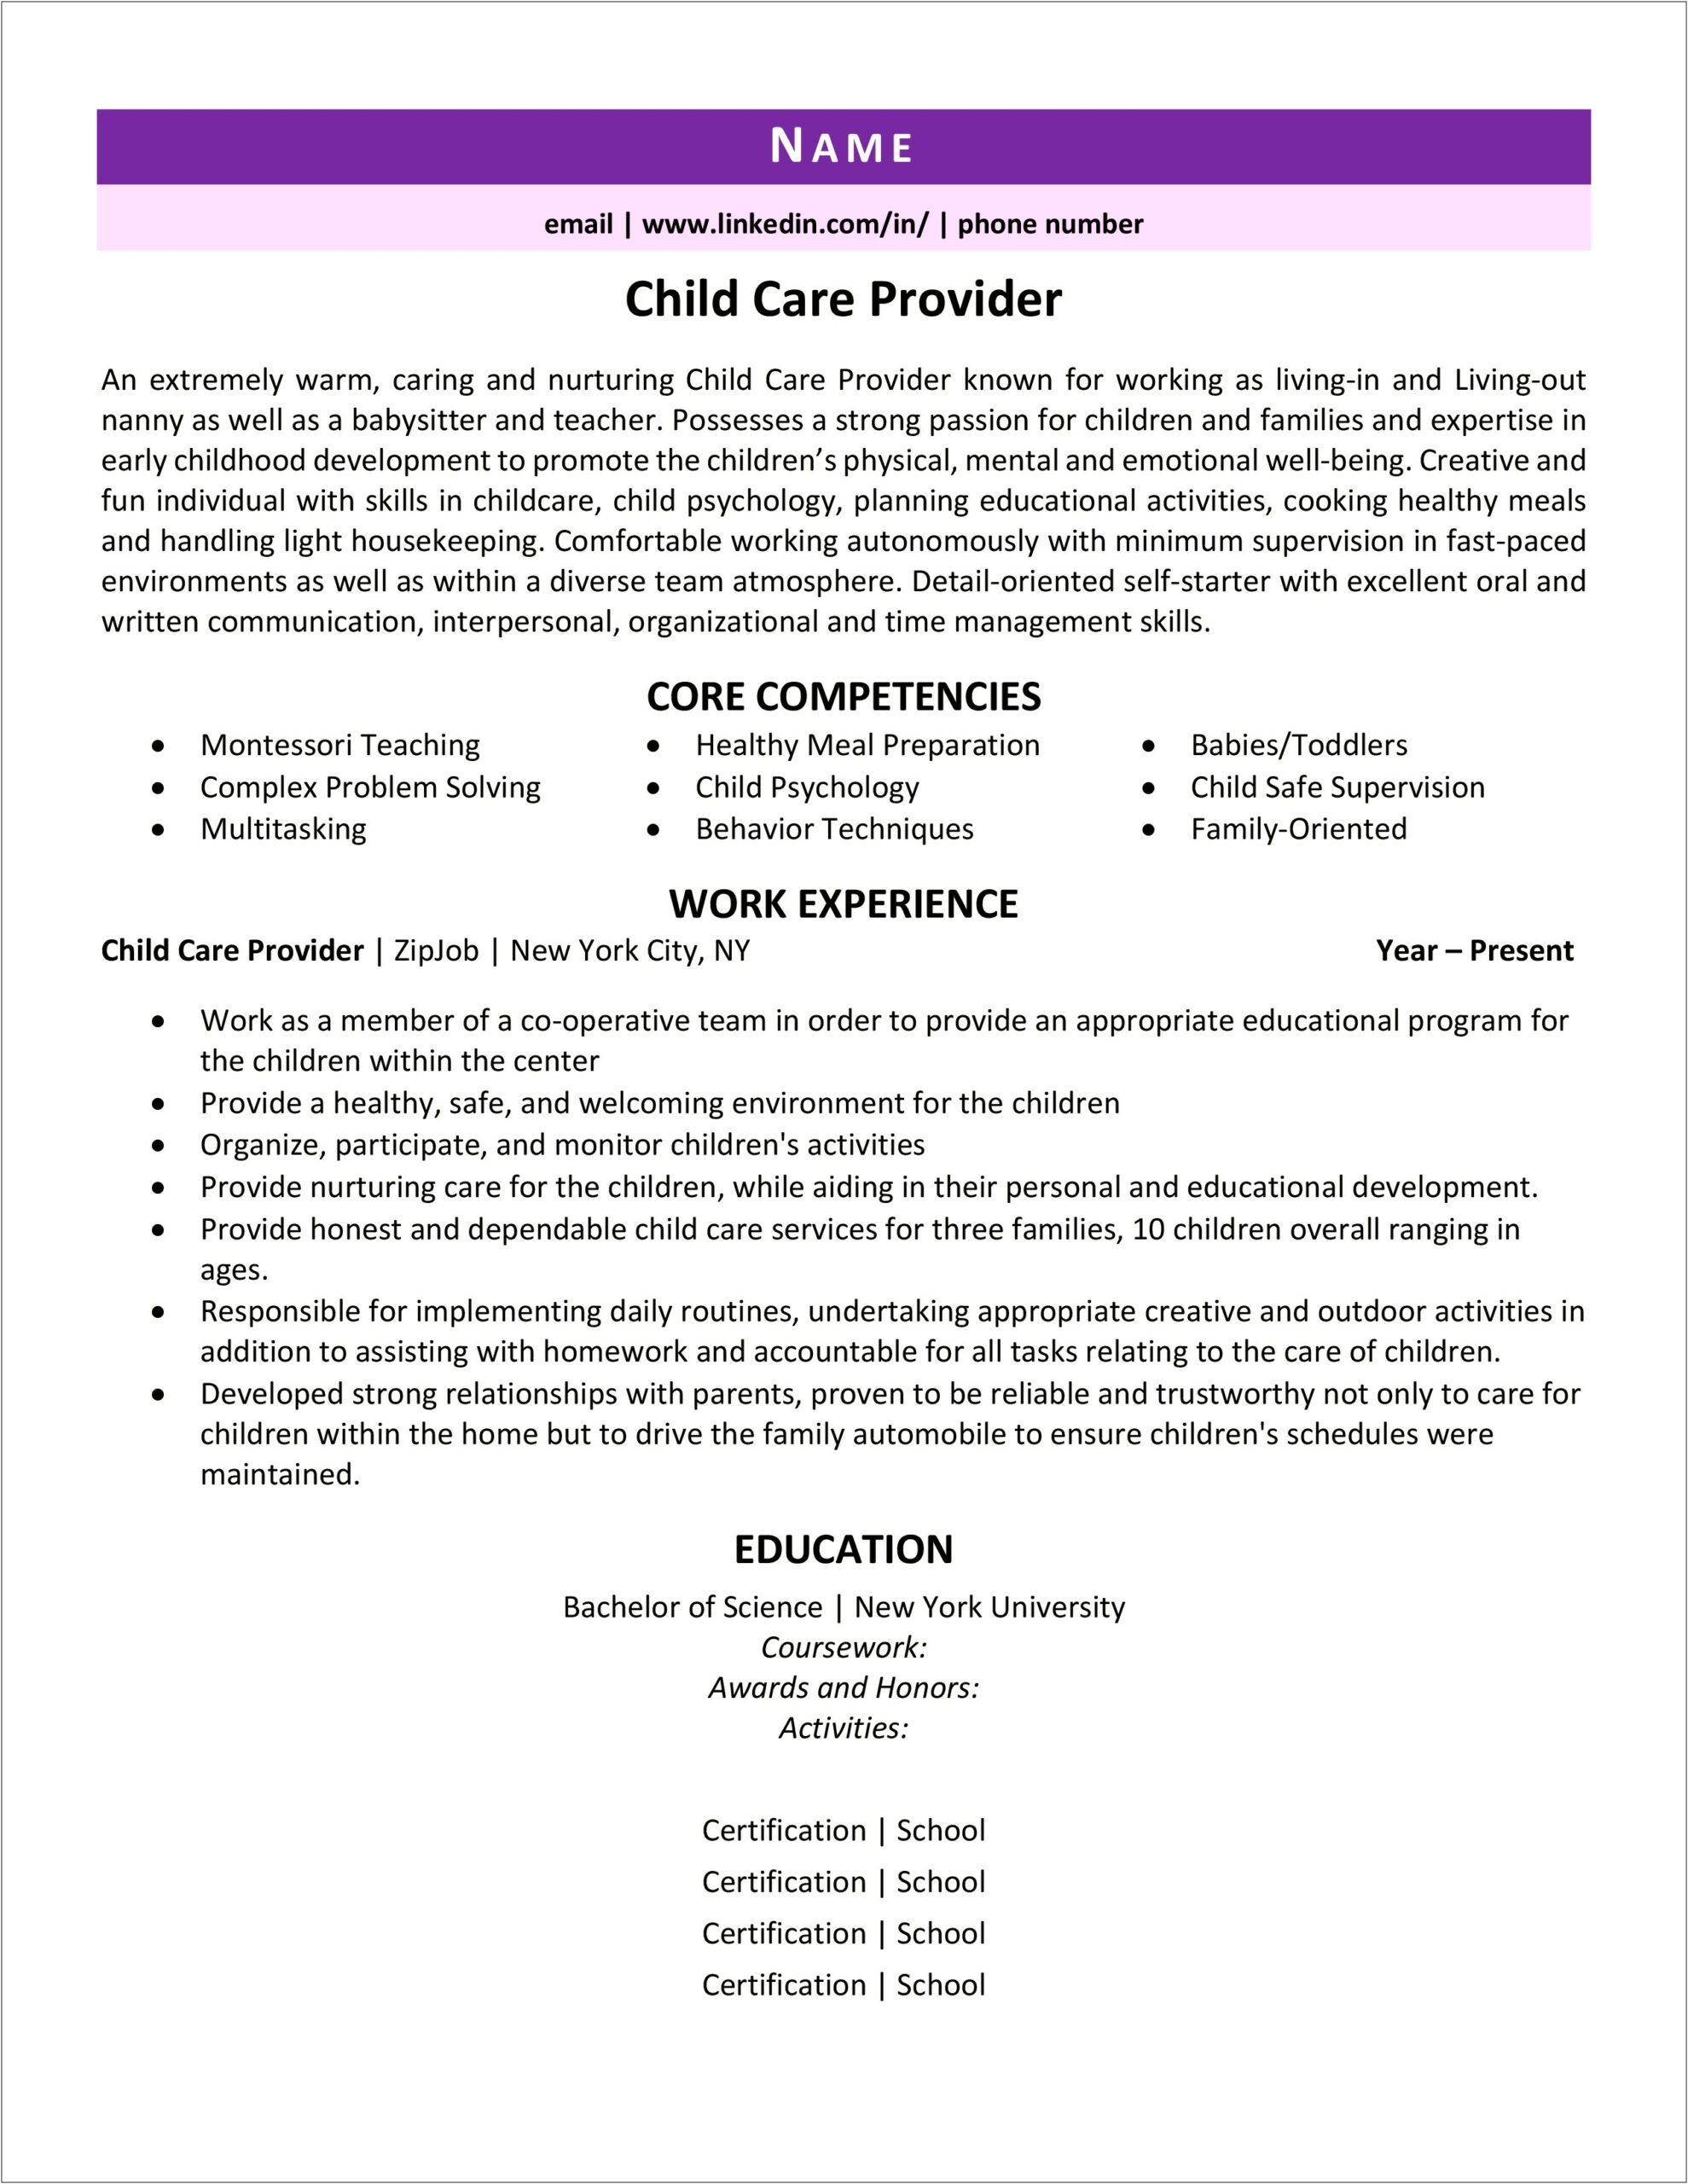 Child Care Provider Description Resume Example